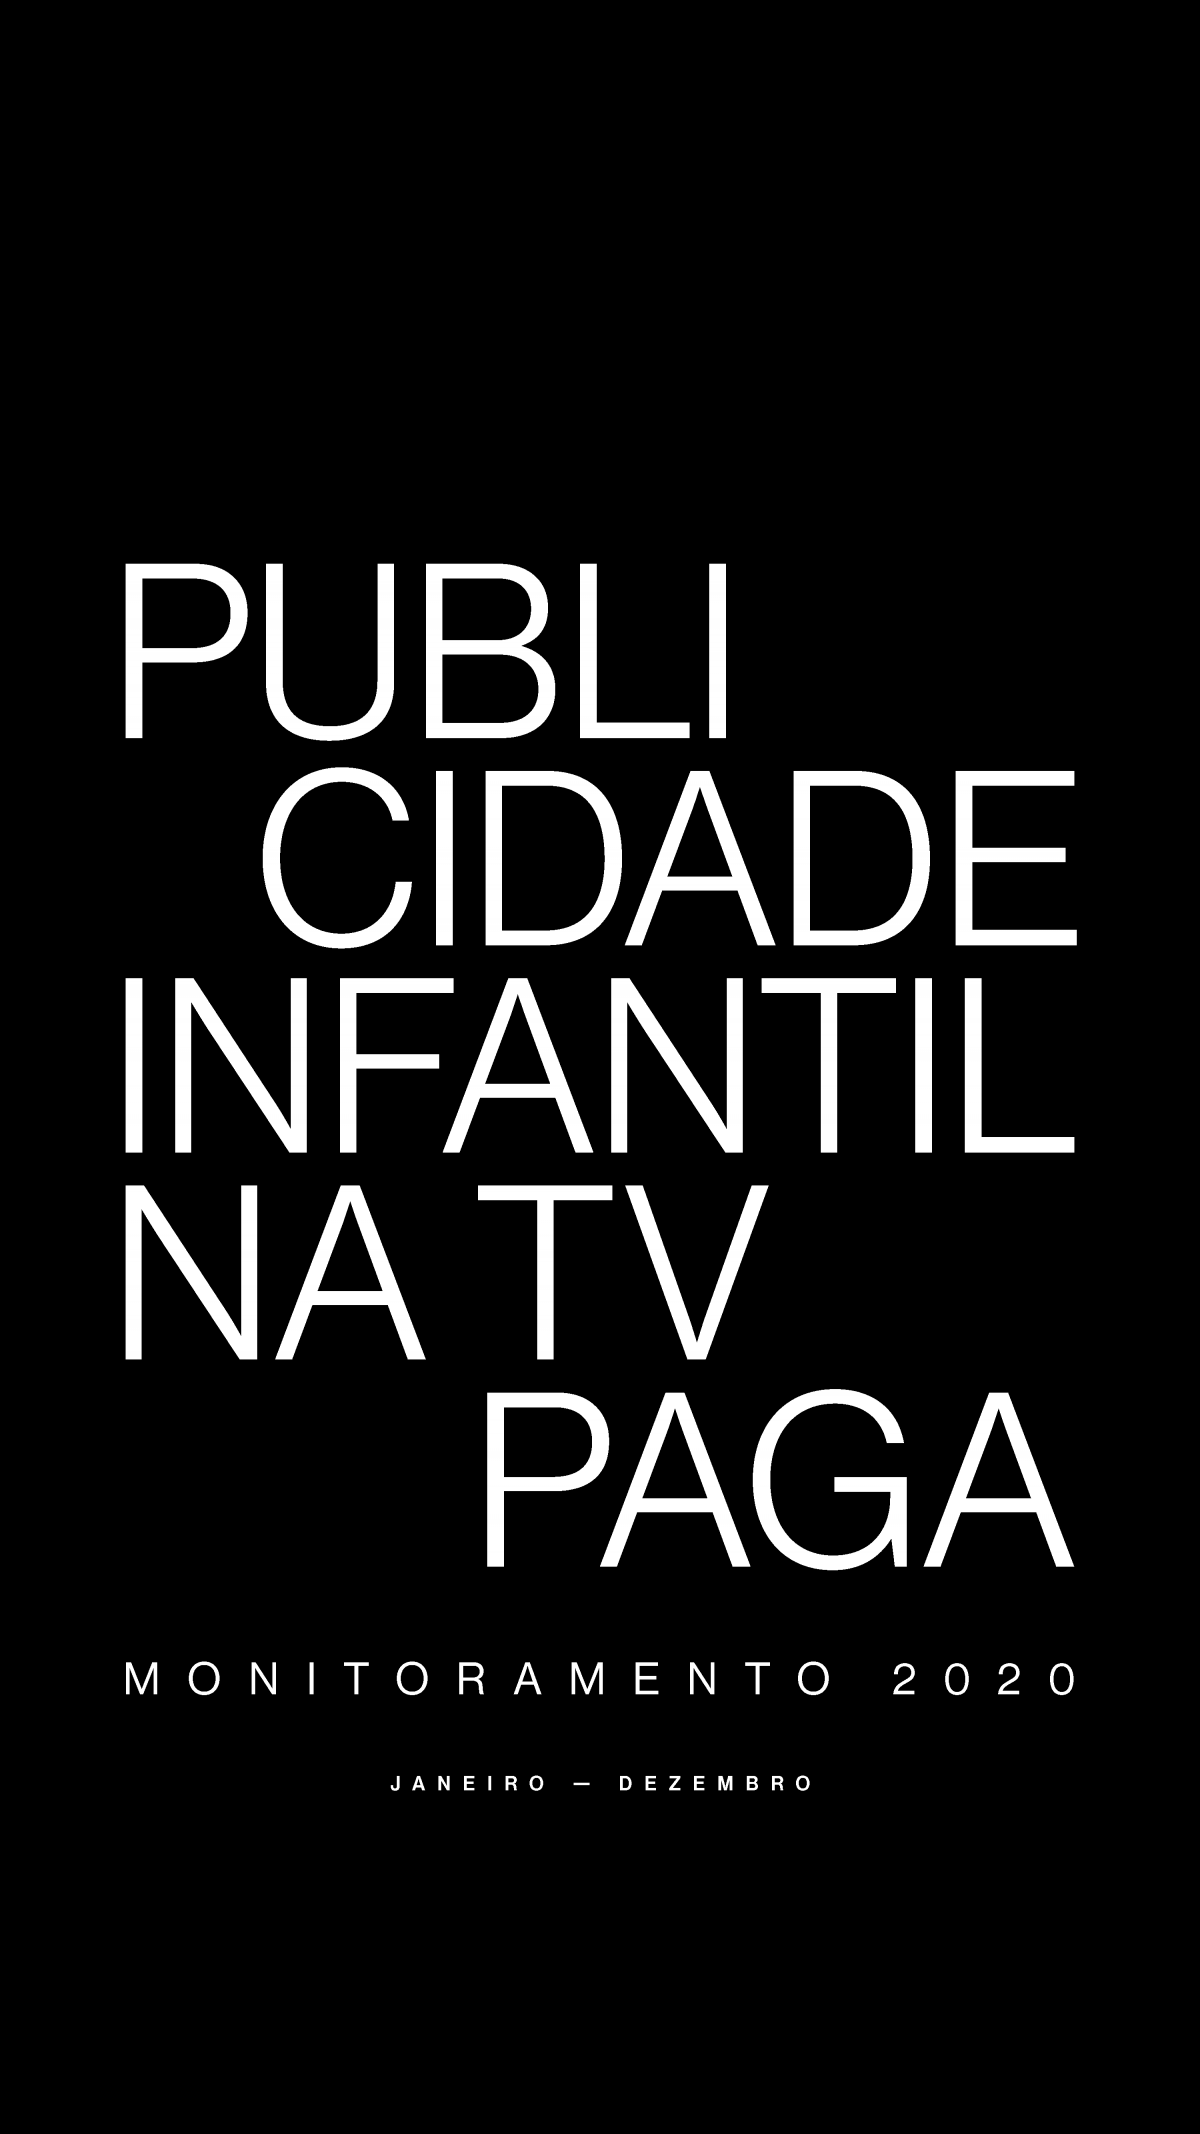 Capa da publicação: Publicidade Infantil na TV Paga – Monitoramento 2020